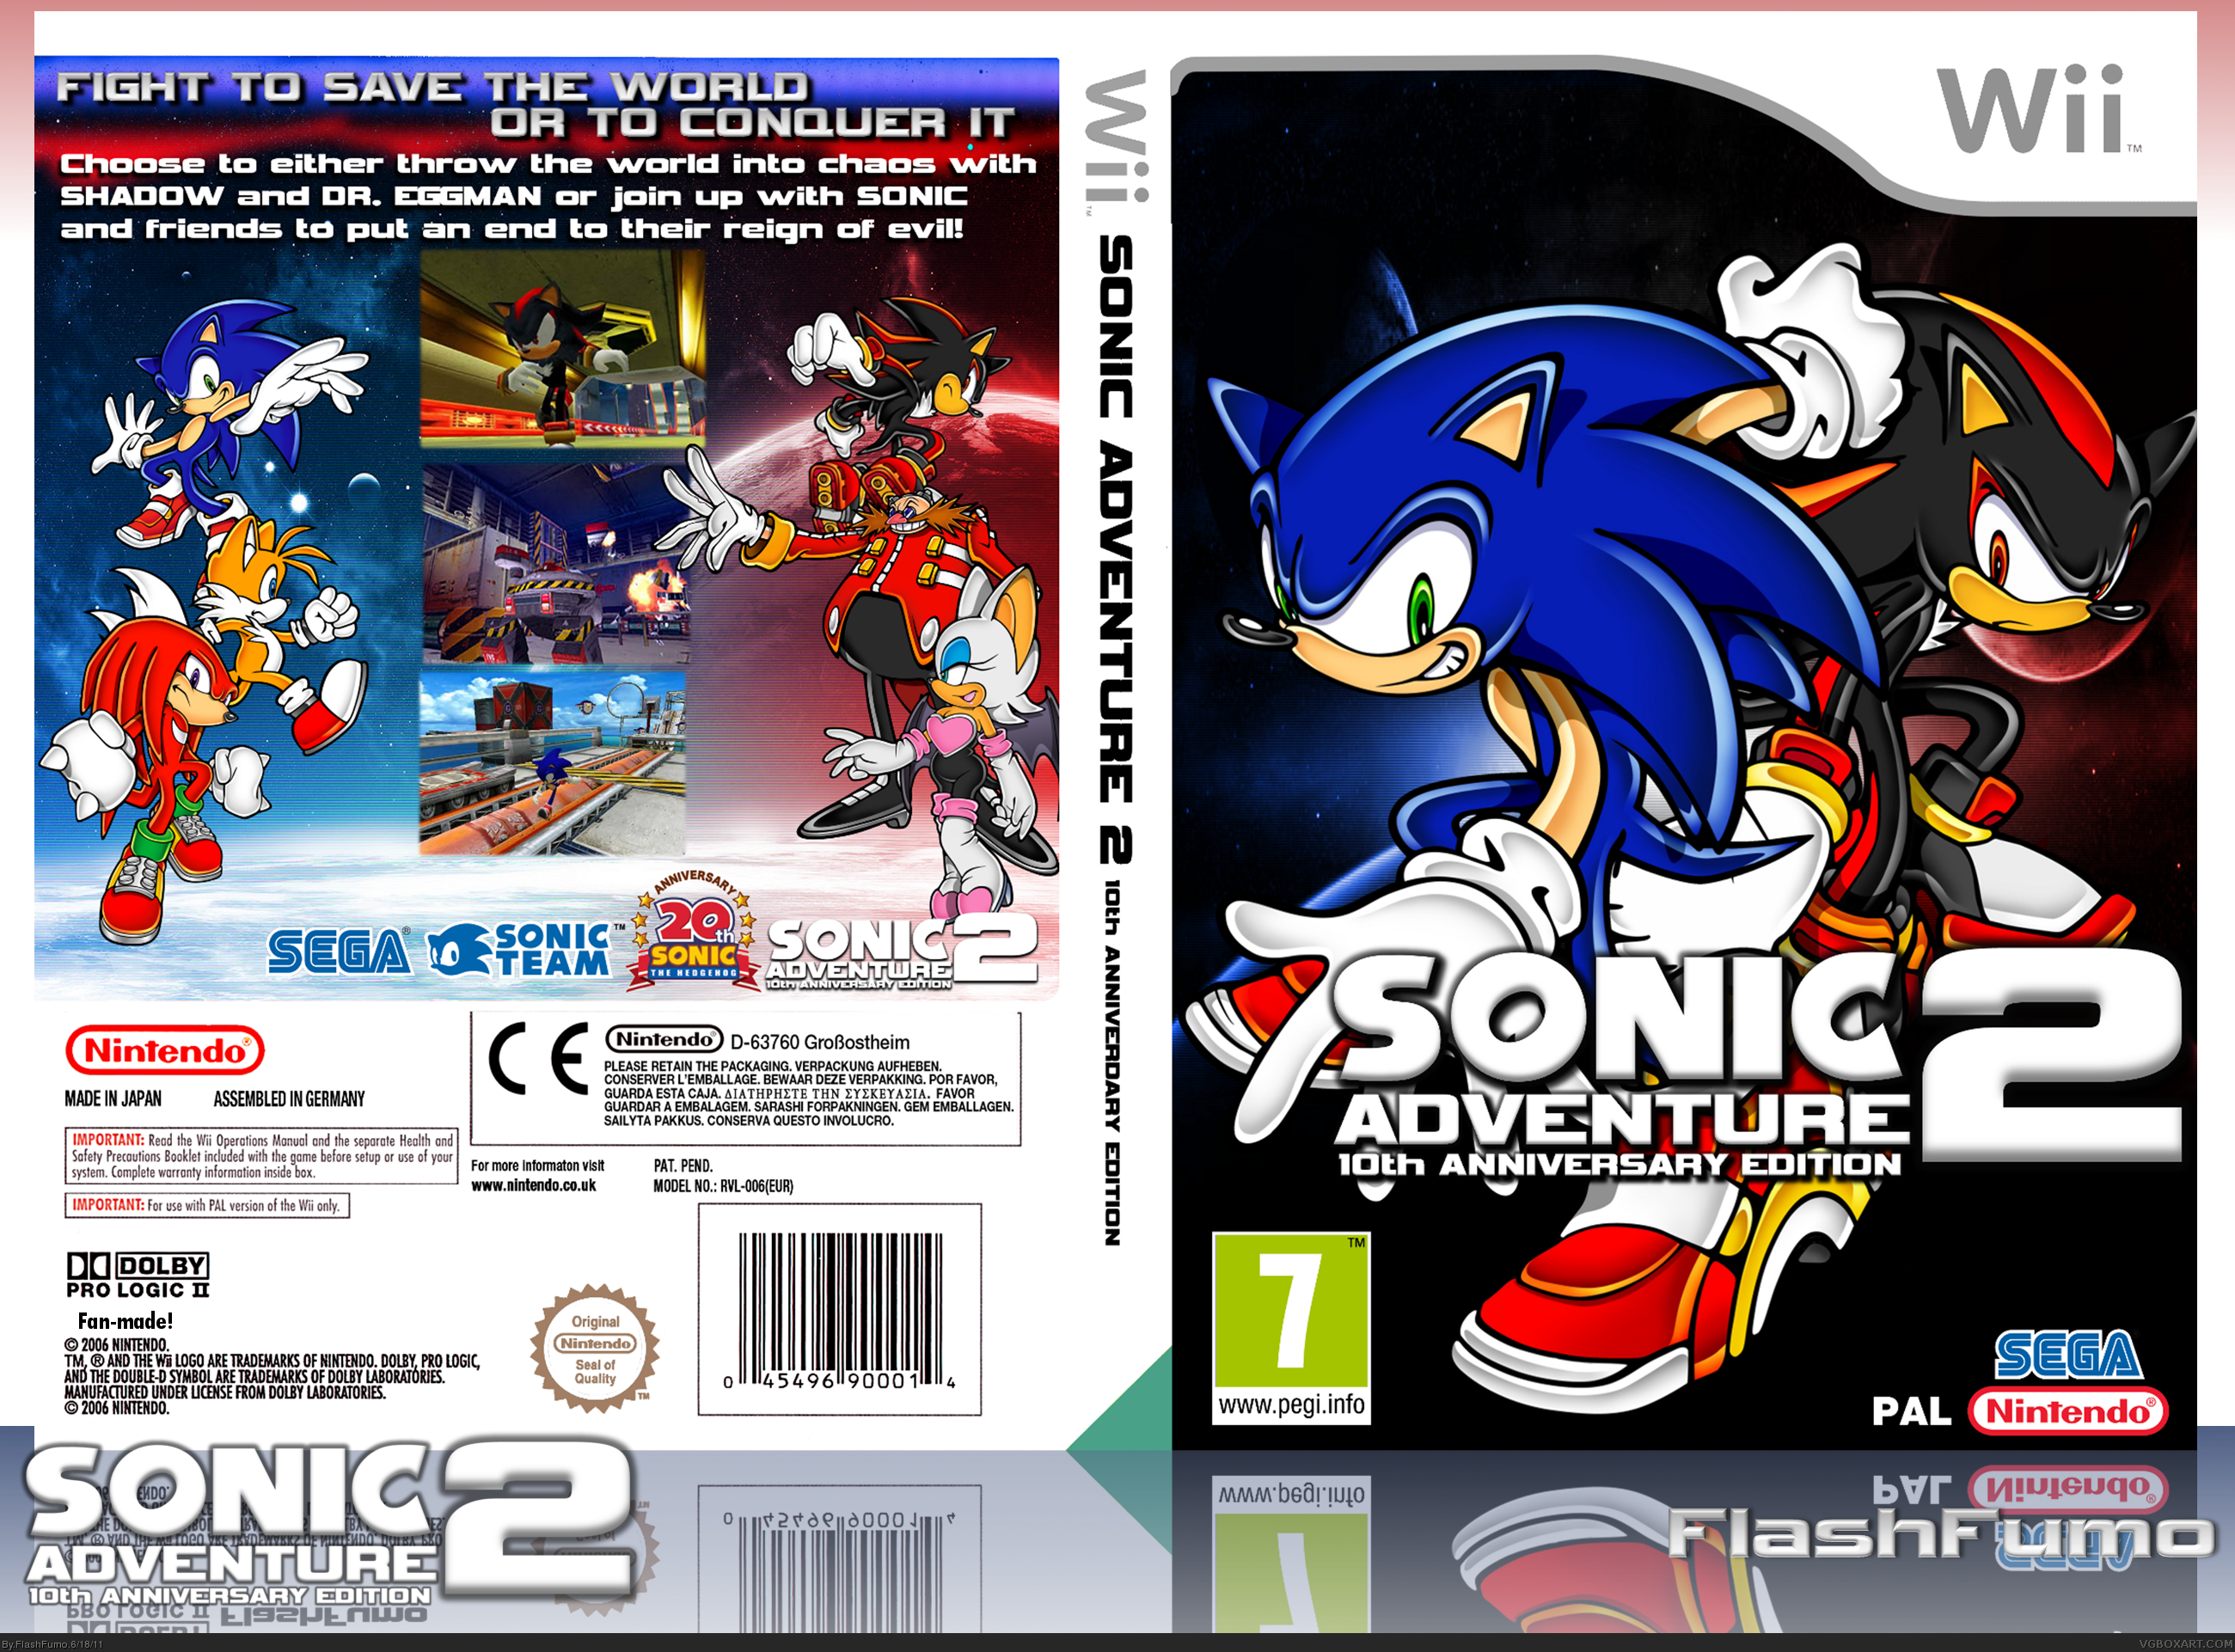 Sonic Adventure 2 - 10th Anniversary Edition box cover